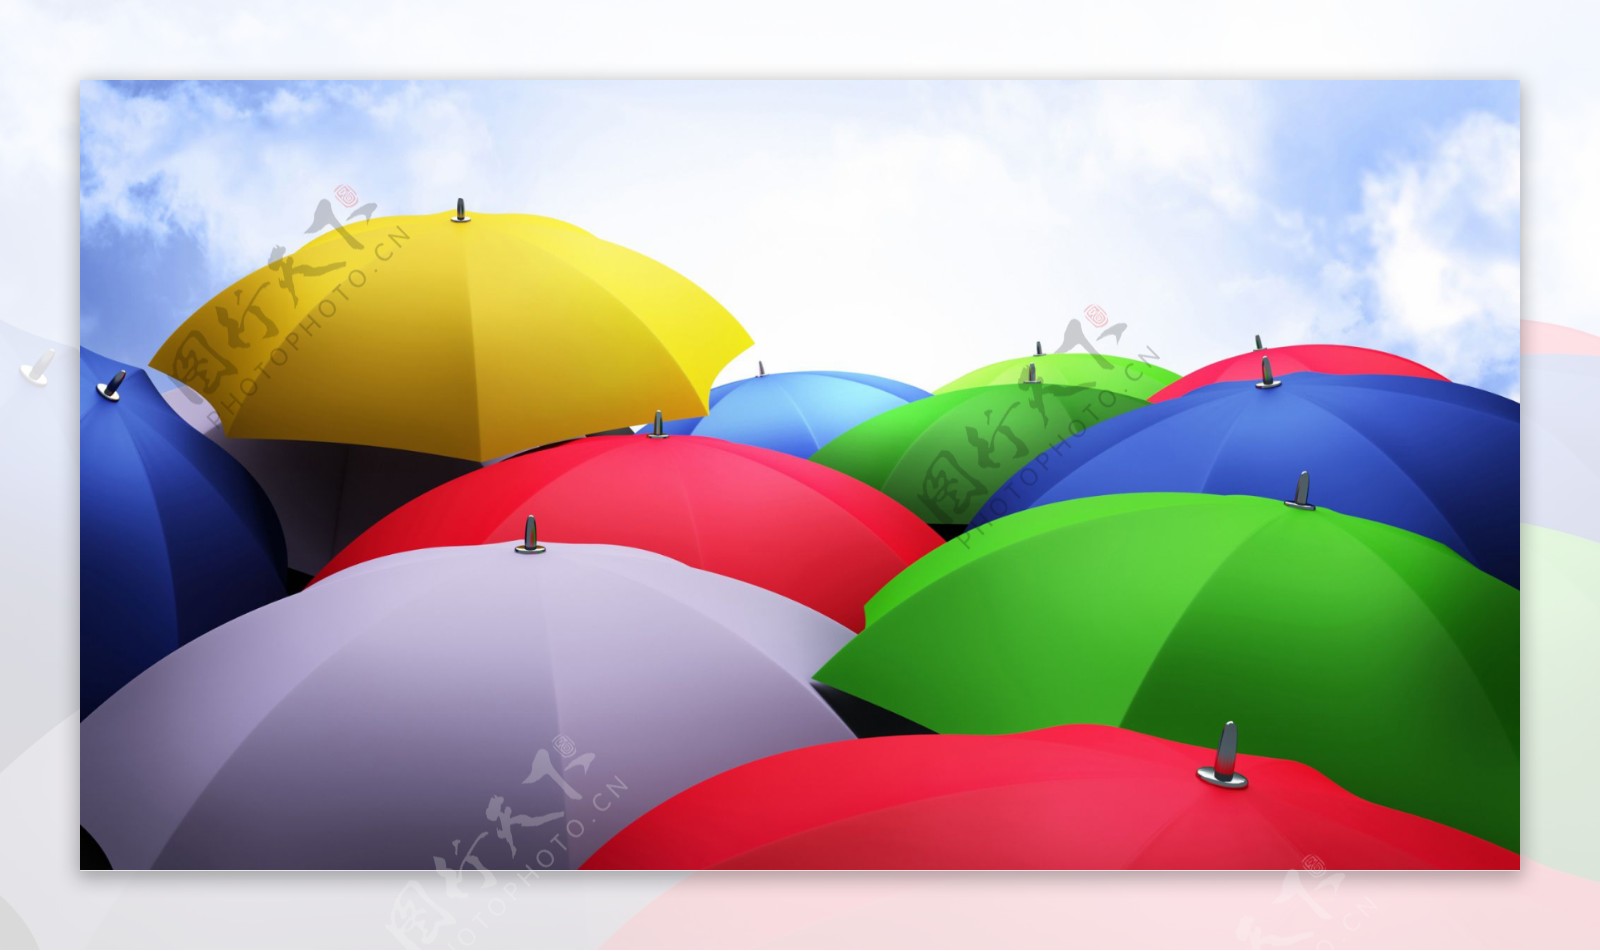 彩色雨伞背景图片